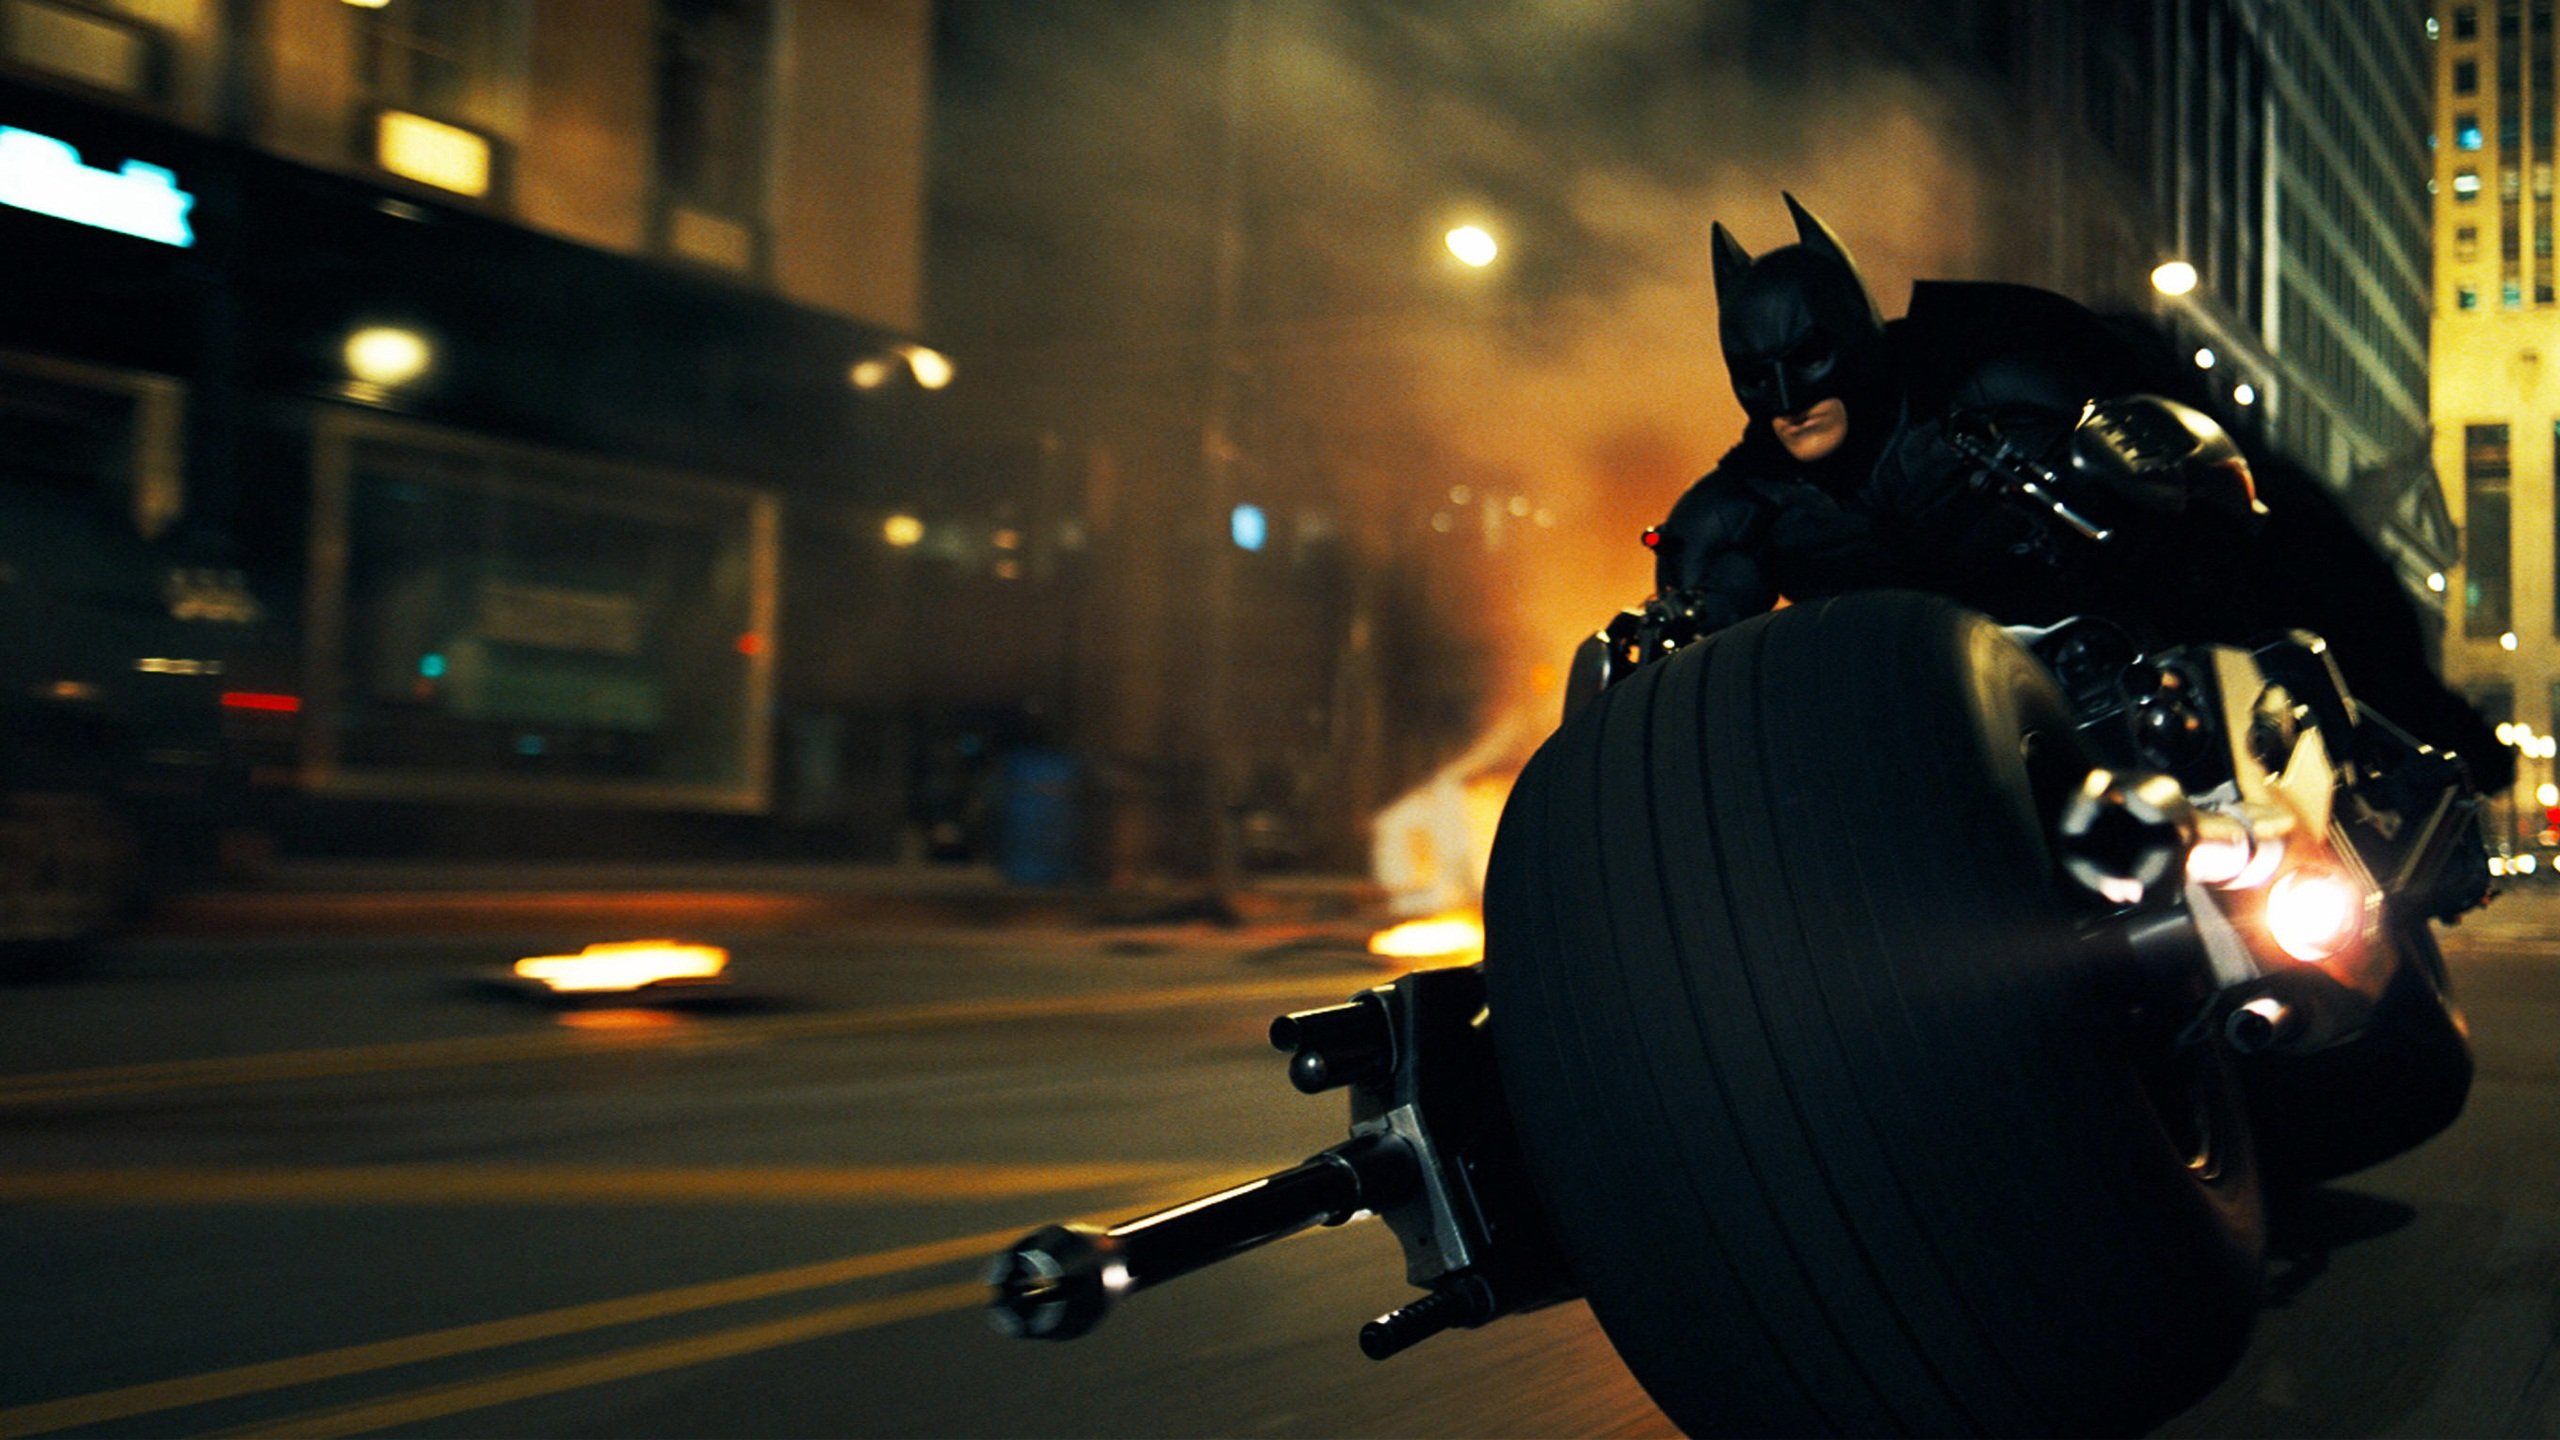 Batman in Dark Knight Rises Wallpapers HD Wallpapers 2560x1440